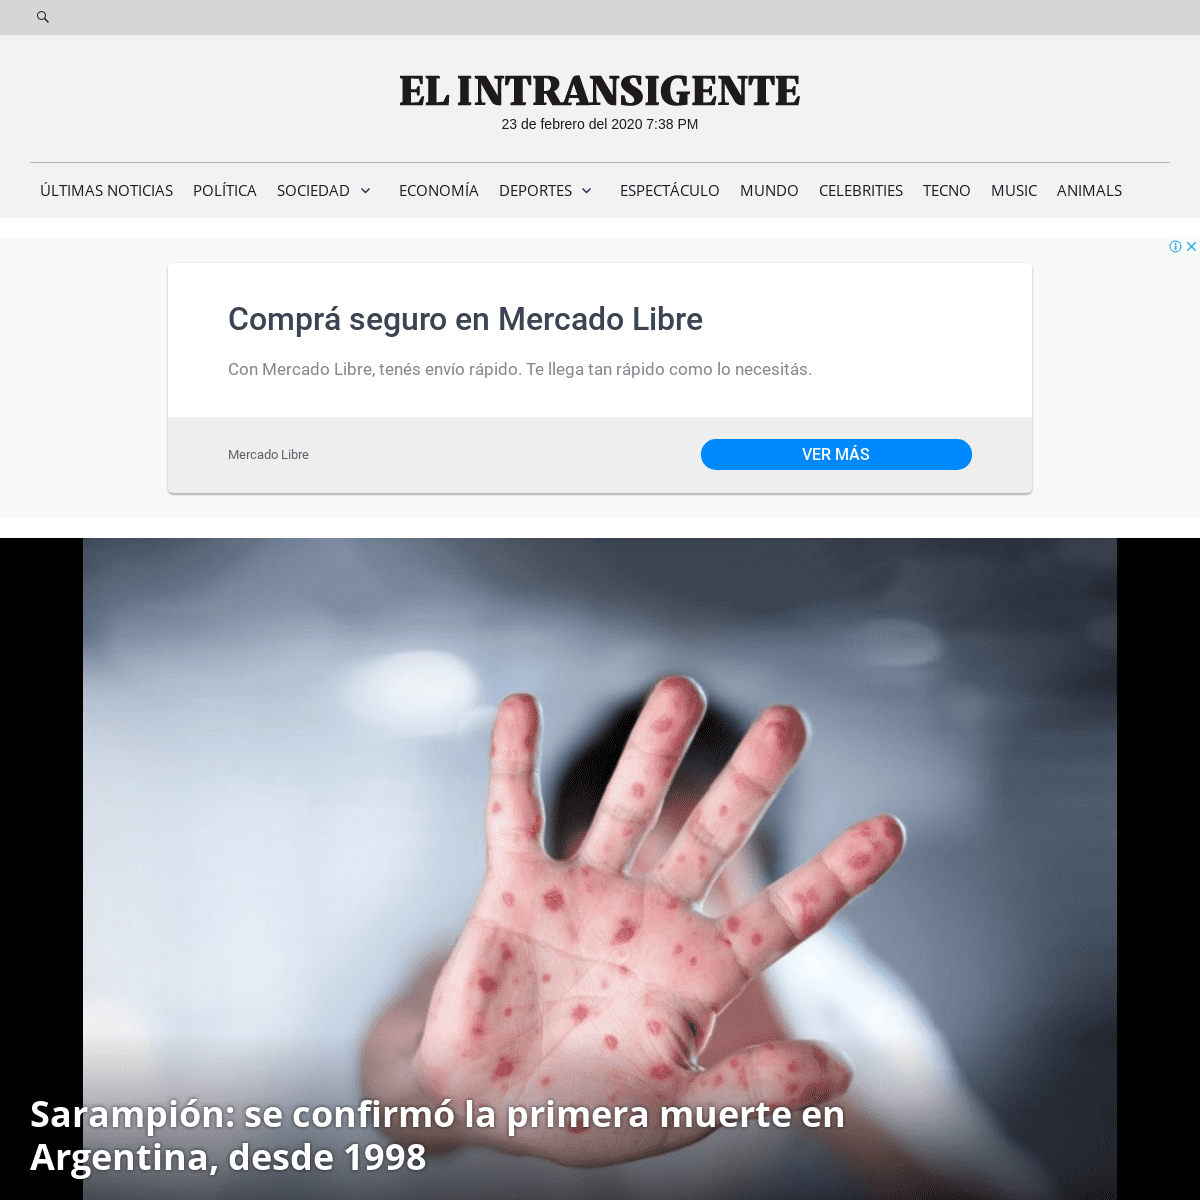 A complete backup of elintransigente.com/sociedad/2020/02/21/sarampion-muerte-prevencion/